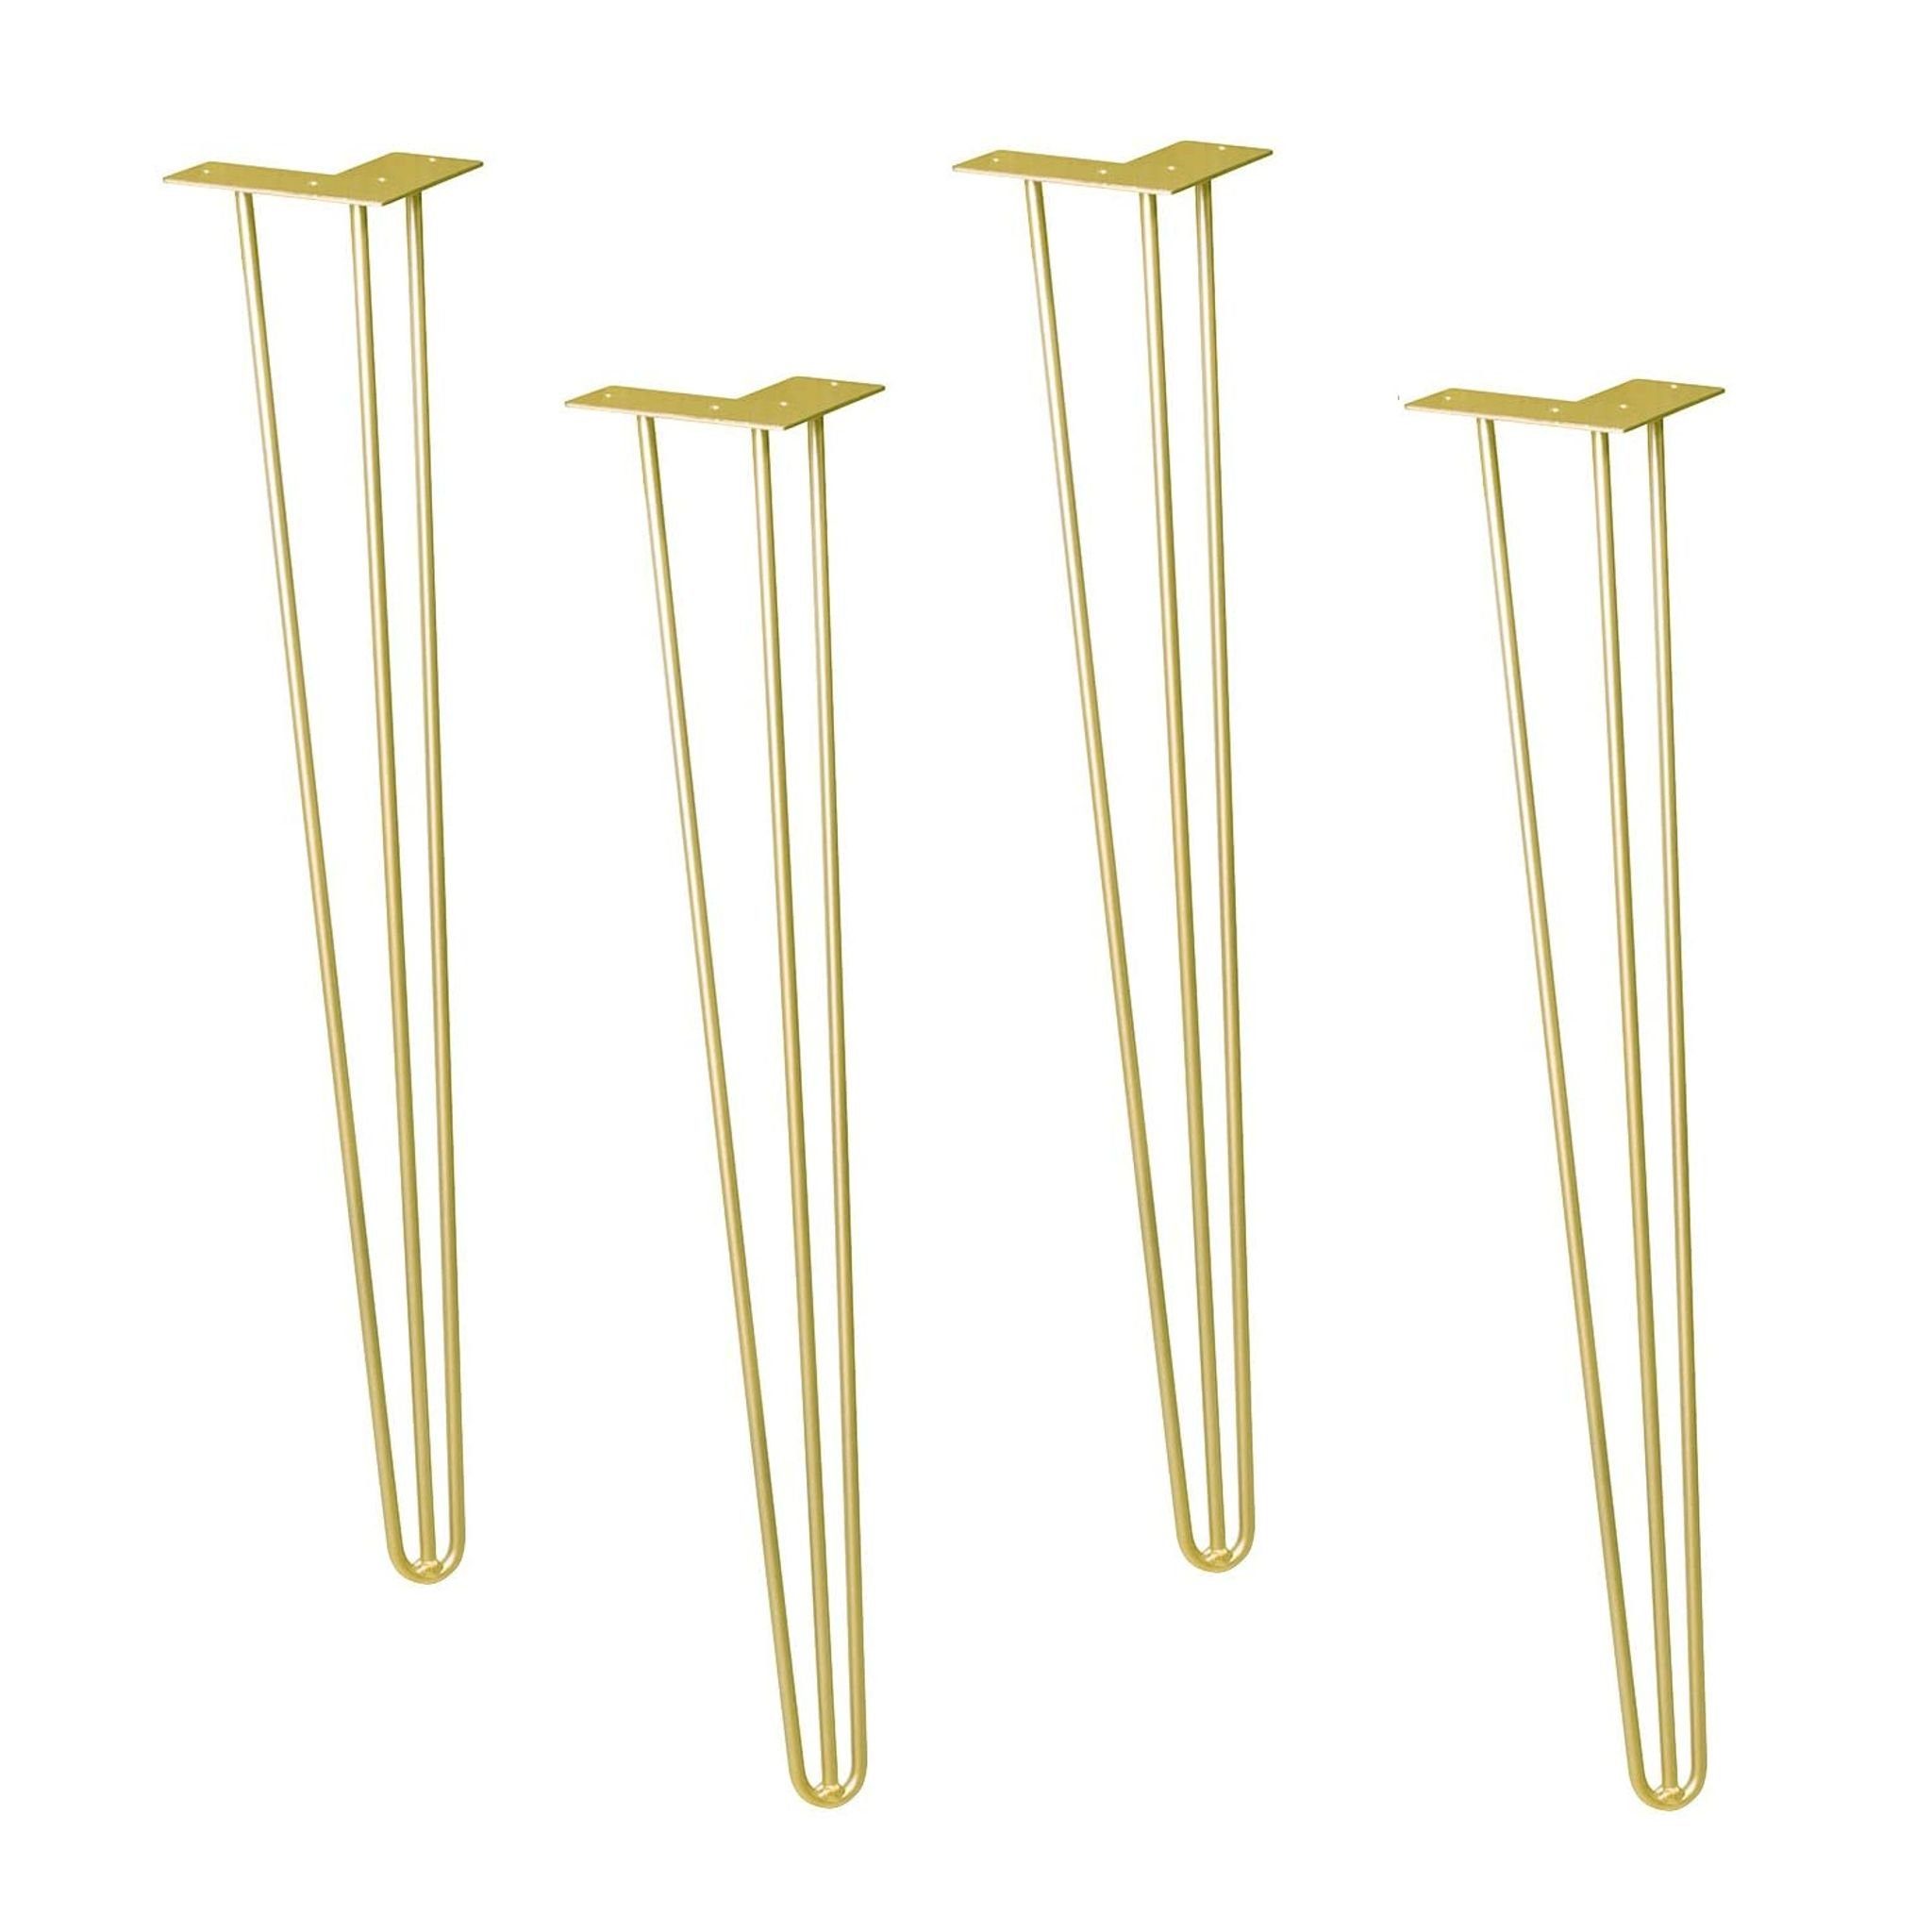 WAGNER design yourself Möbelfuß Möbelbein/Tischbein - HAIRPIN LEGS 4er Set - Retro Style - 12 x 12 x 71 cm in diversen Farben, Bein konisch/schräg verlaufend, mit integrierter Anschraubplatte gold